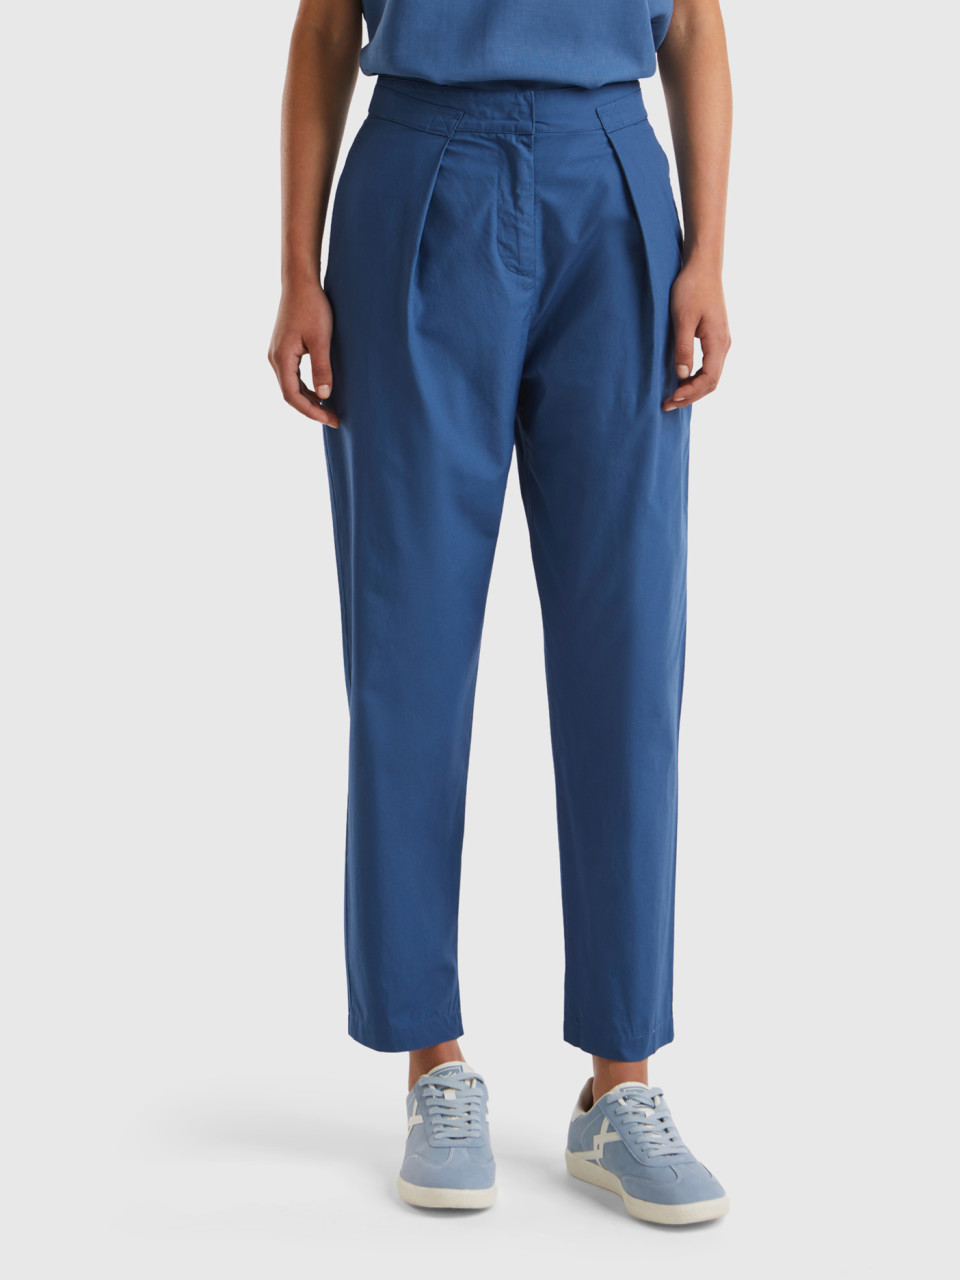 Benetton, Denim Trousers In Lightweight Cotton, Air Force Blue, Women